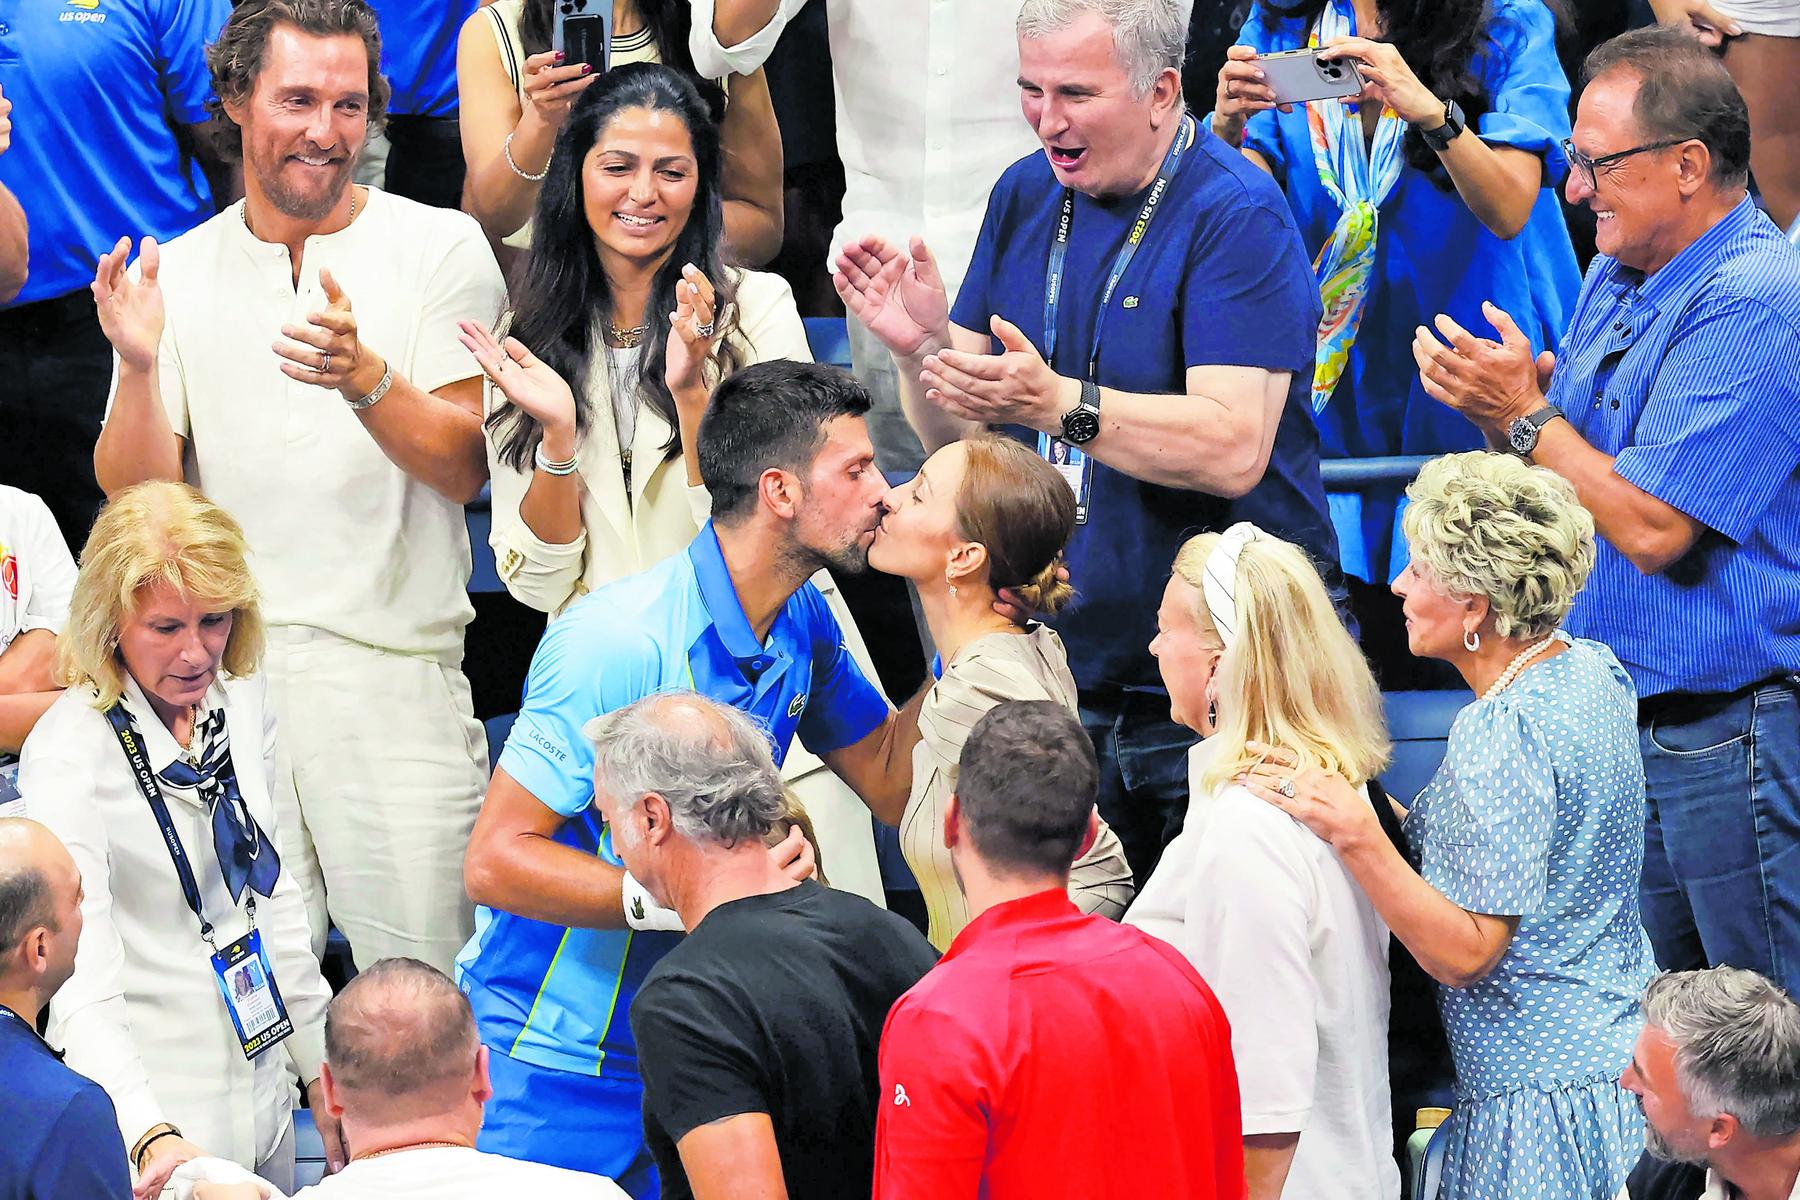 Video zum 10. Hochzeitstag: Novak Djokovic macht Ehefrau Jelena eine herzergreifende Liebeserklärung